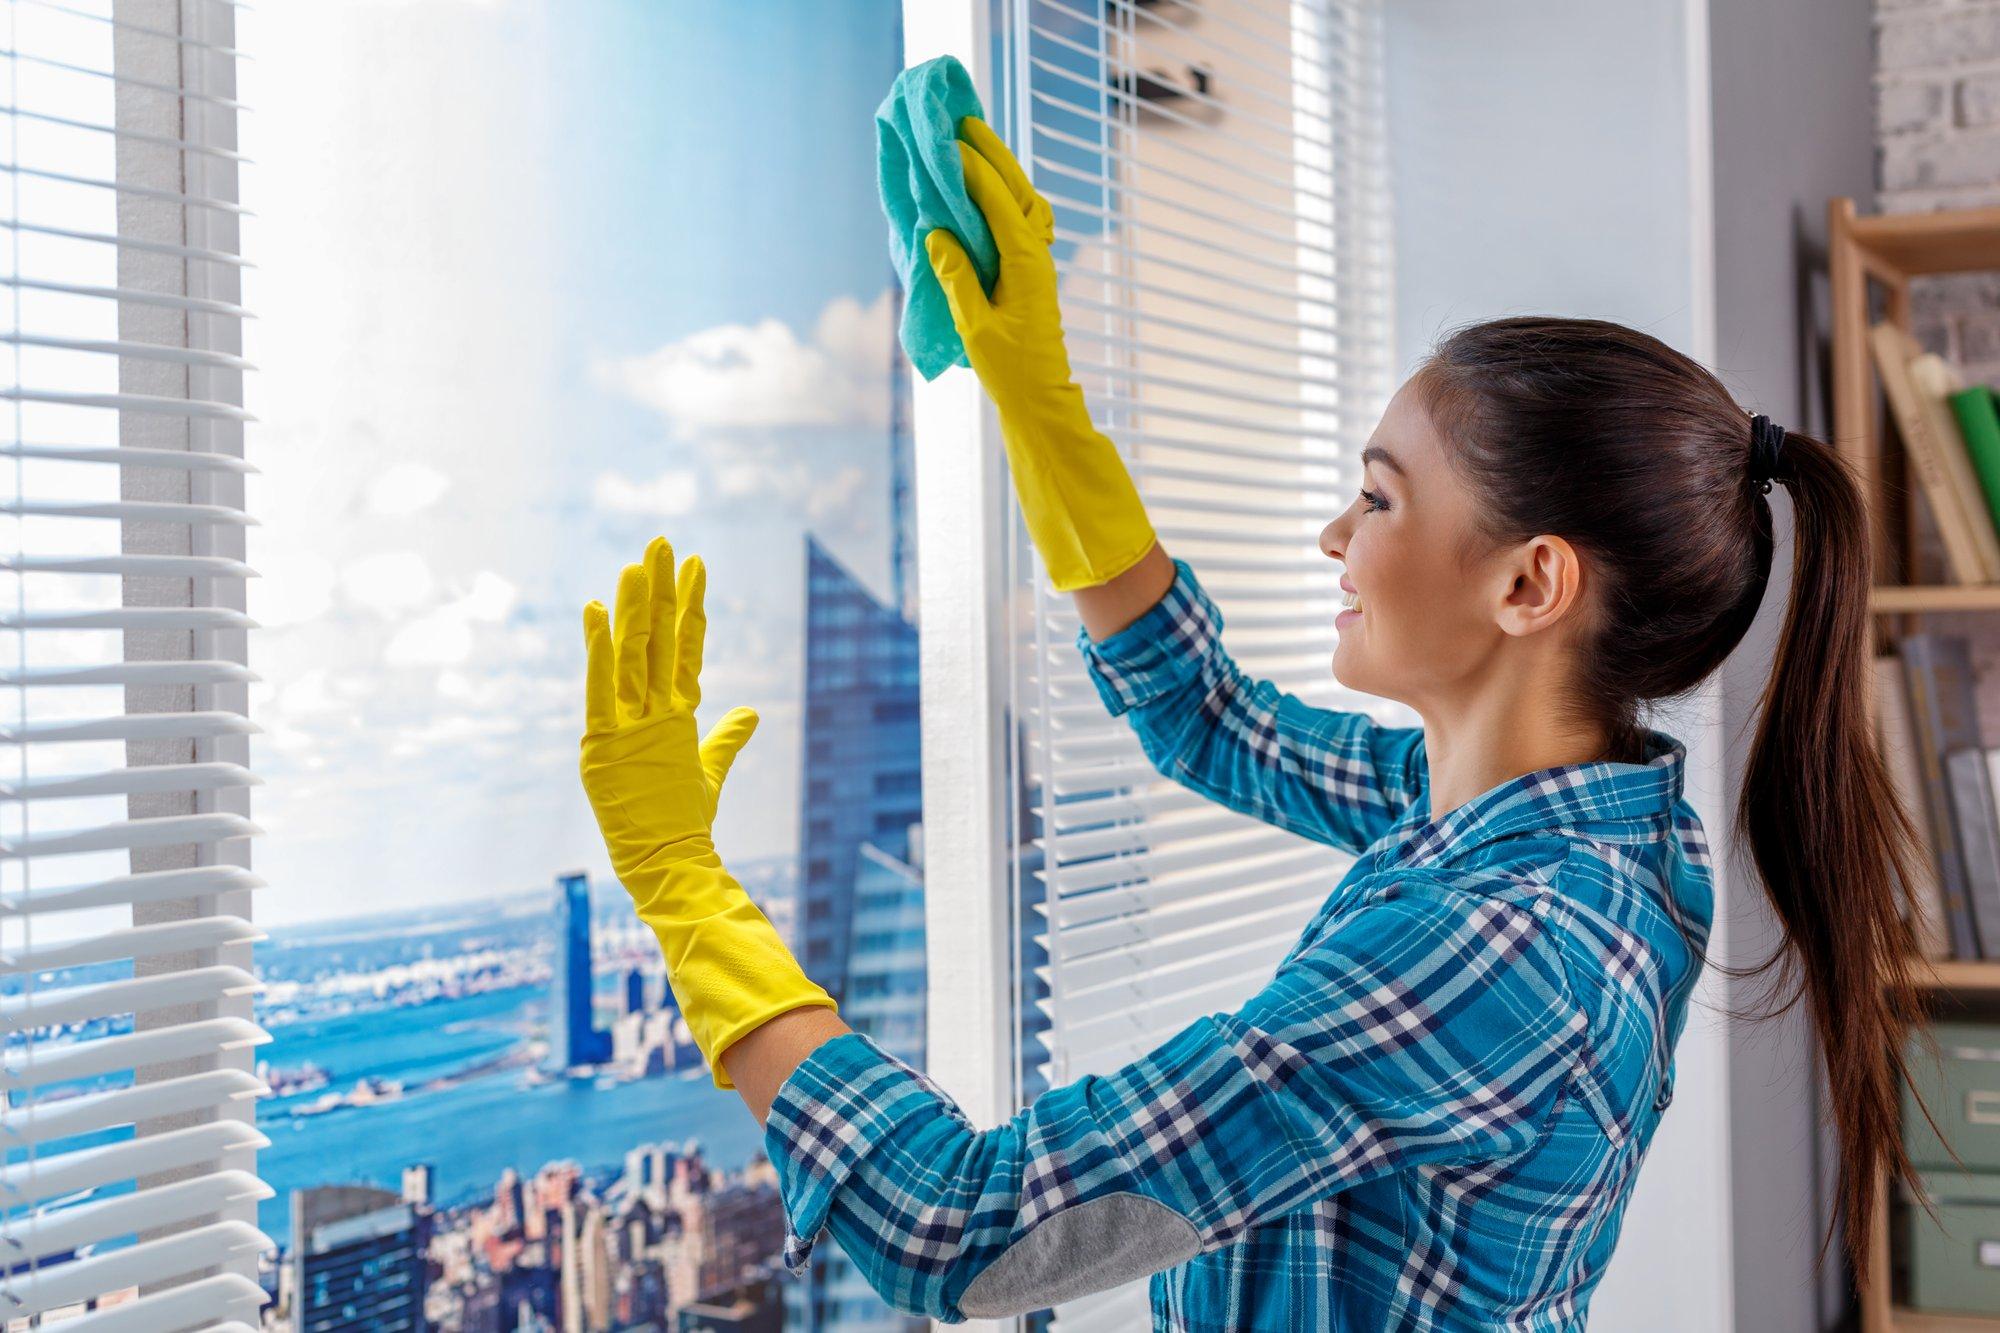 Чистые окна за 30 минут: весенняя уборка экспресс-способом